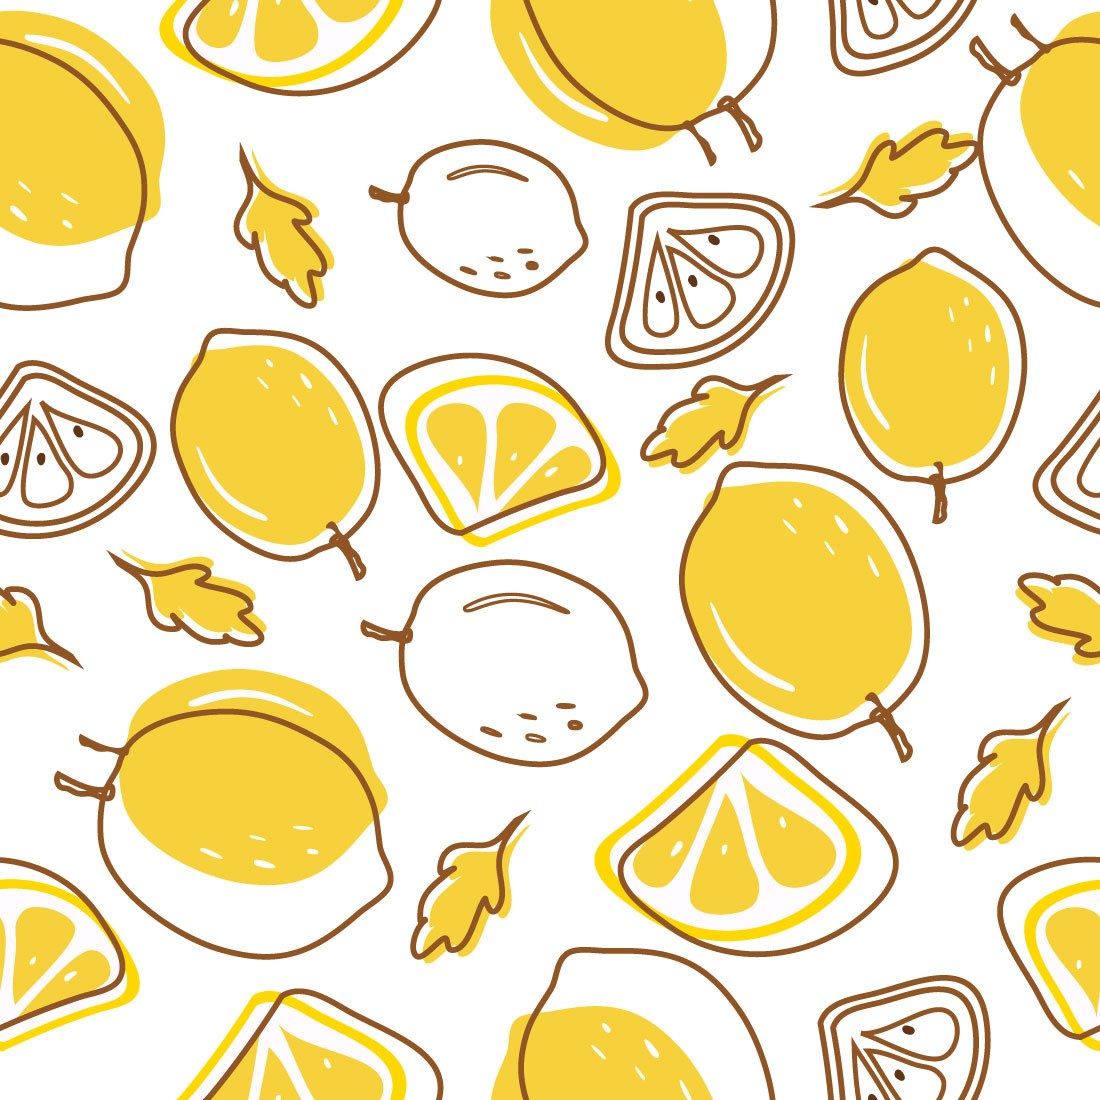 Lemon Seamless Pattern preview image.